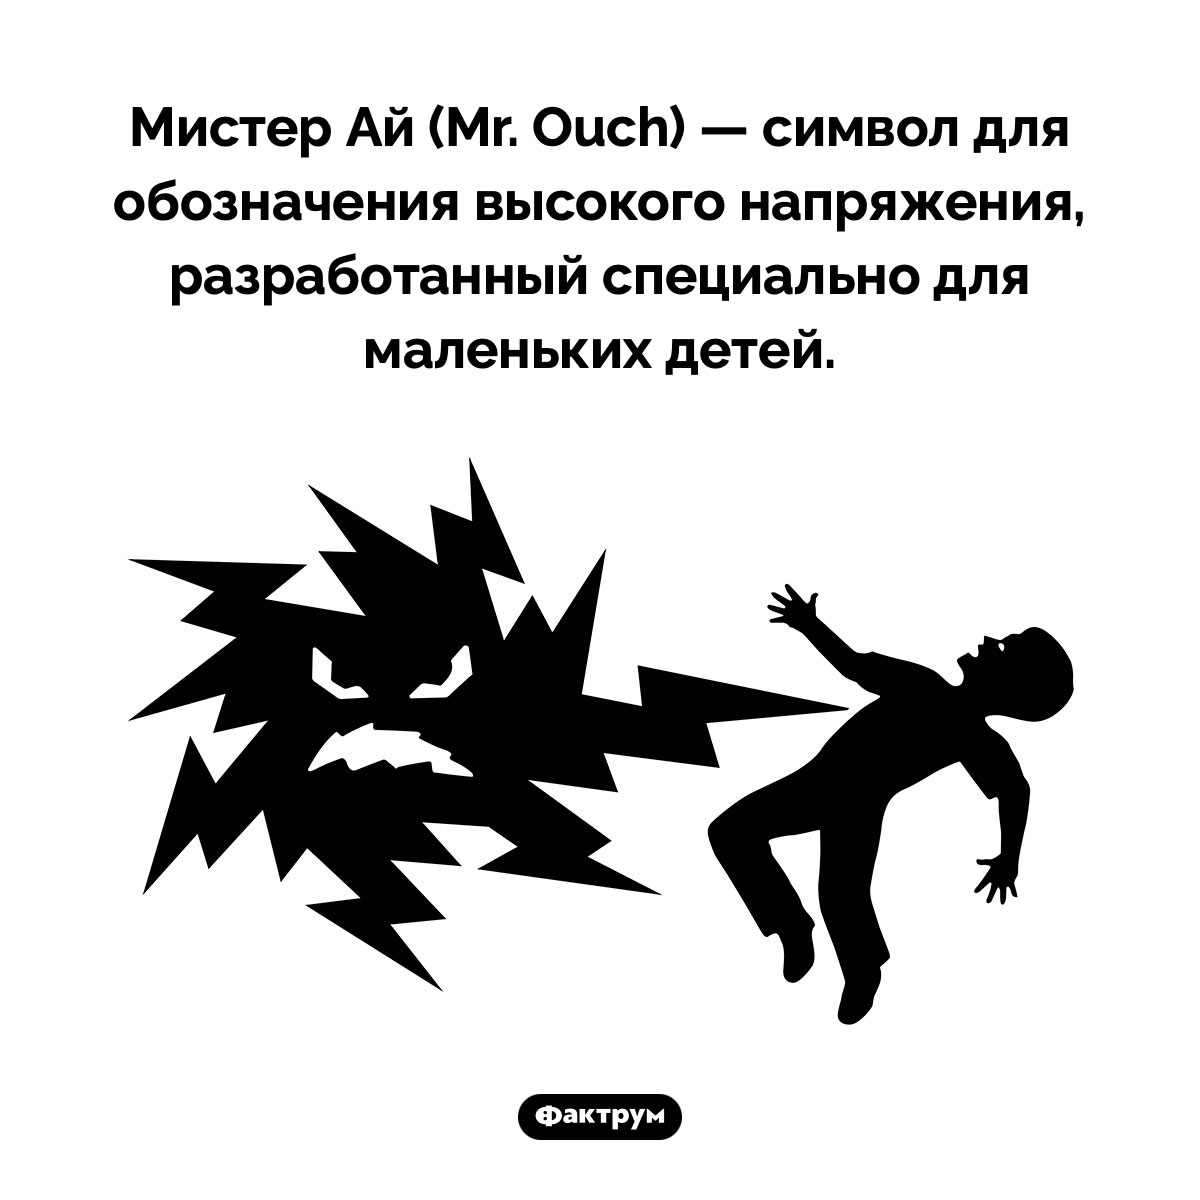 Кто такой Мистер Ай. Мистер Ай (Mr. Ouch) — символ для обозначения высокого напряжения, разработанный специально для маленьких детей.